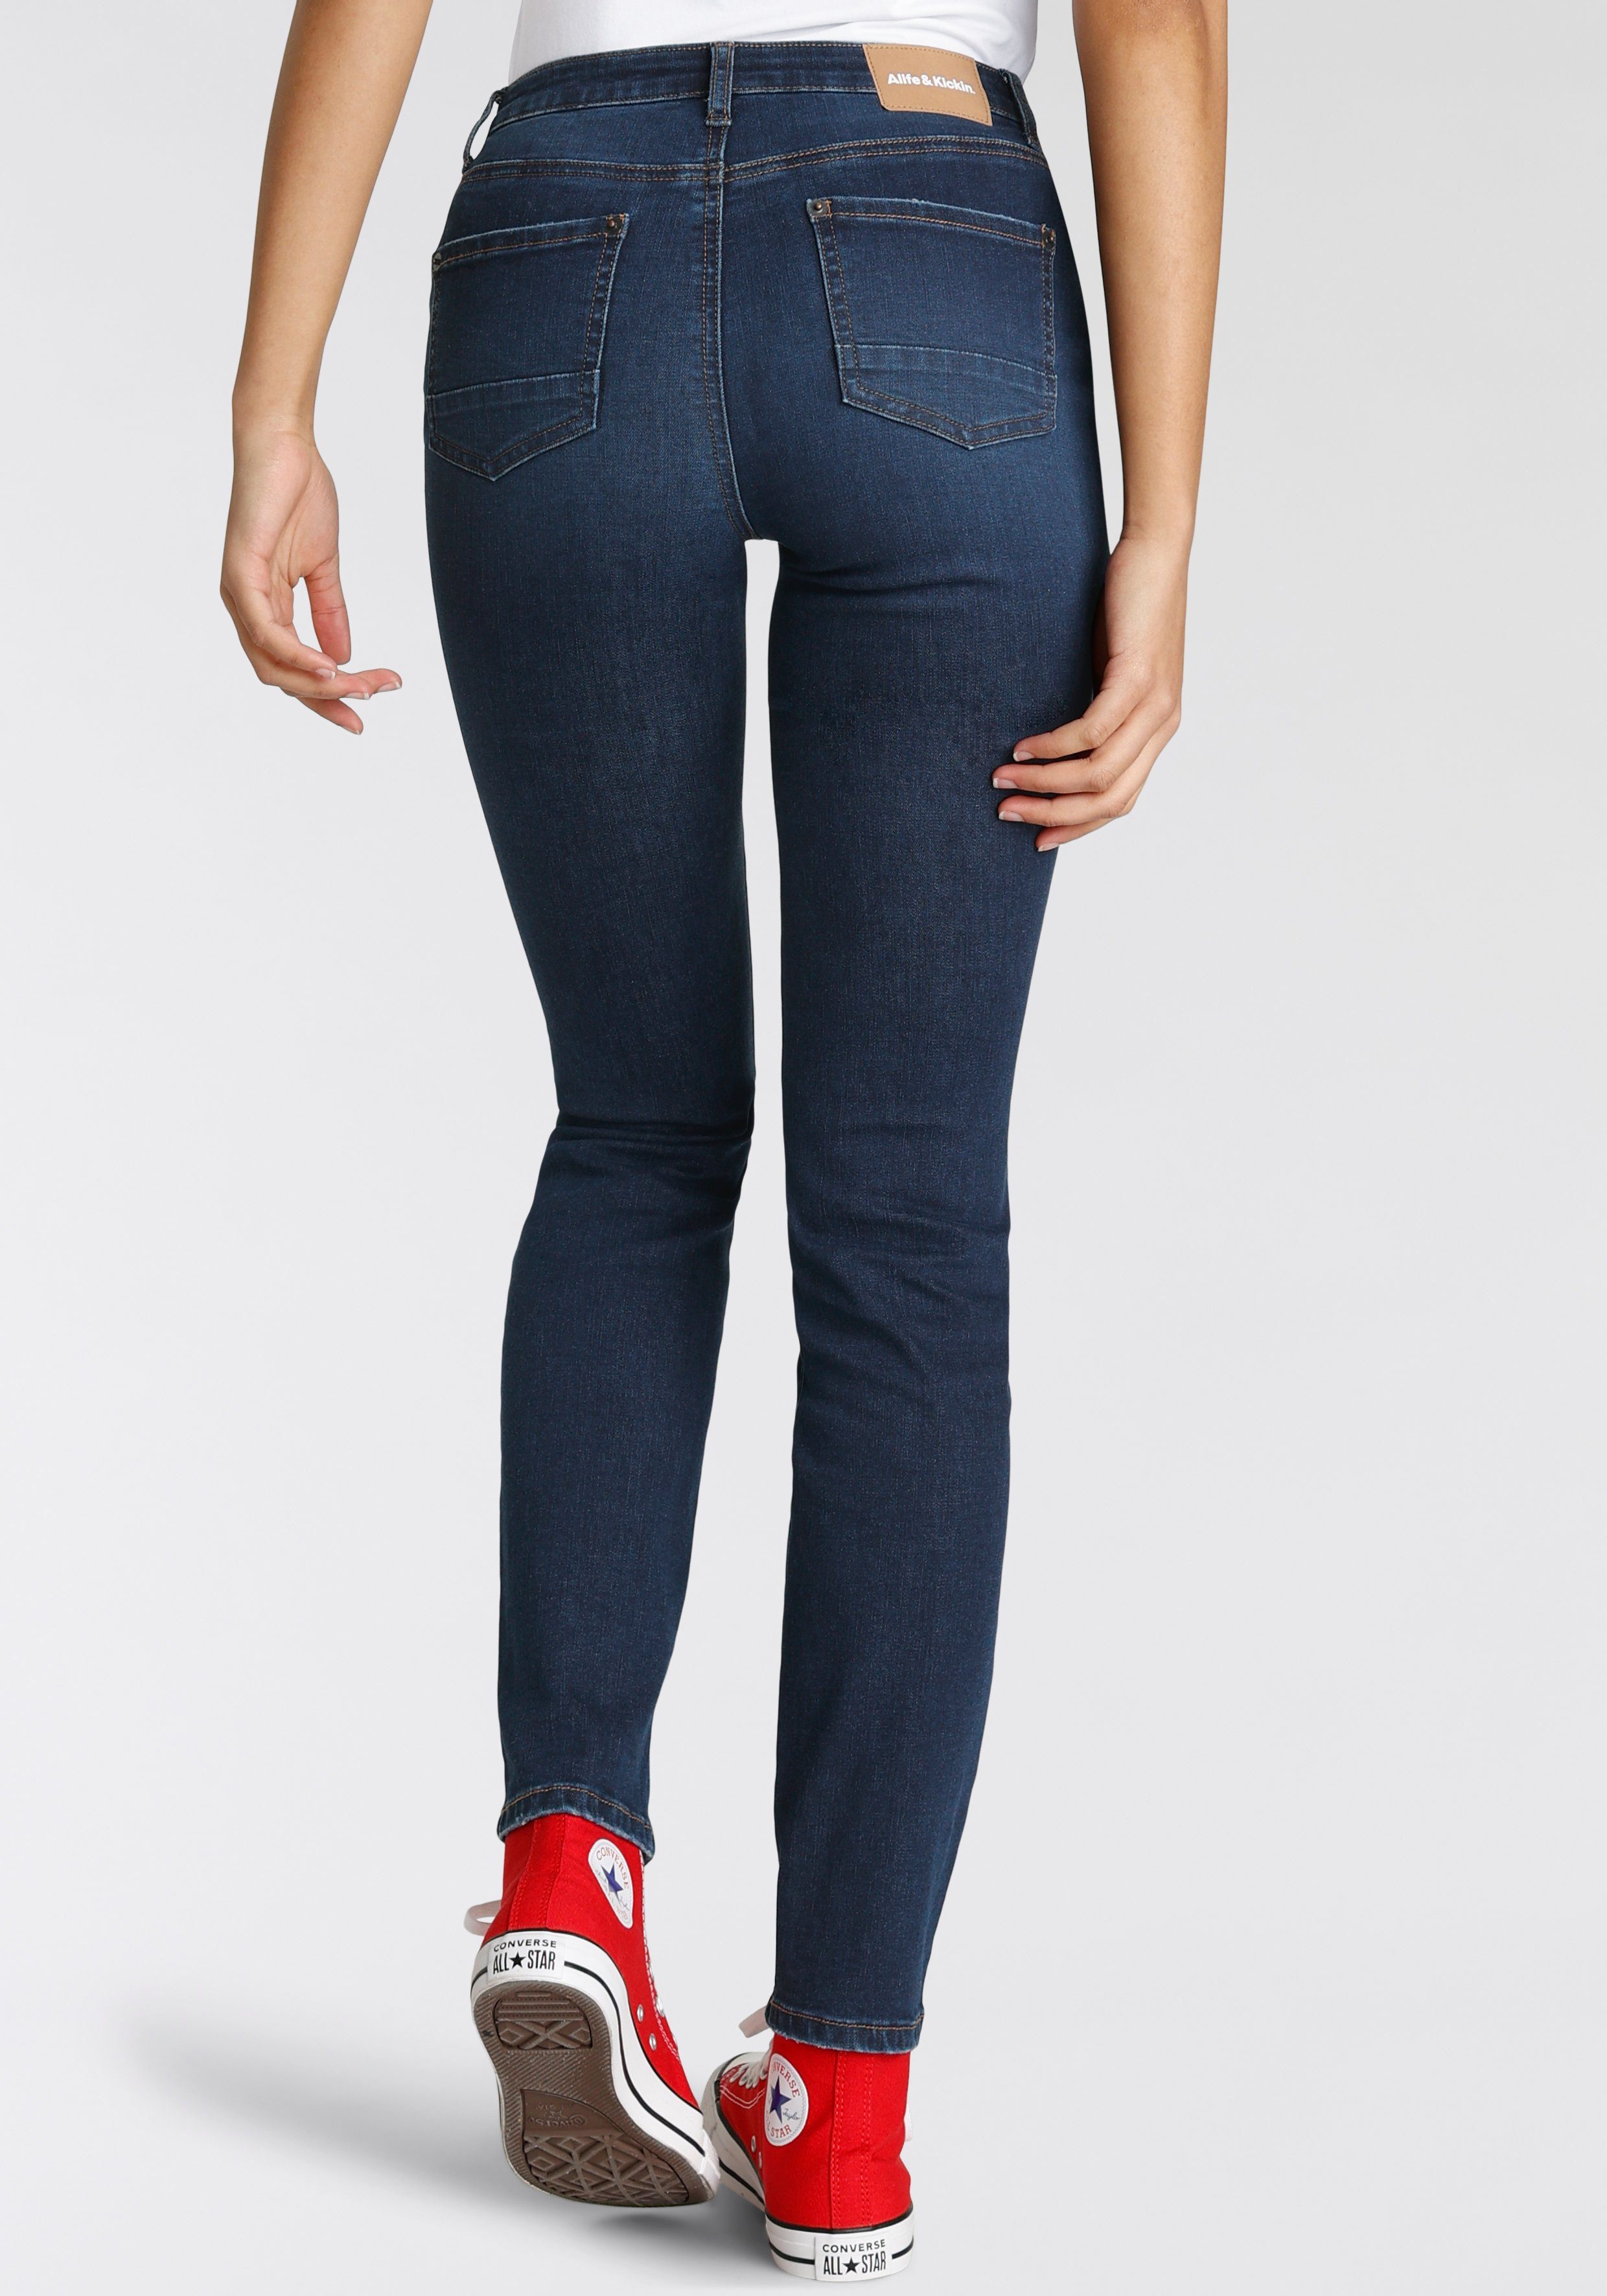 Alife & Kickin High-waist-Jeans Slim-Fit KOLLEKTION used dark NEUE used NolaAK blue